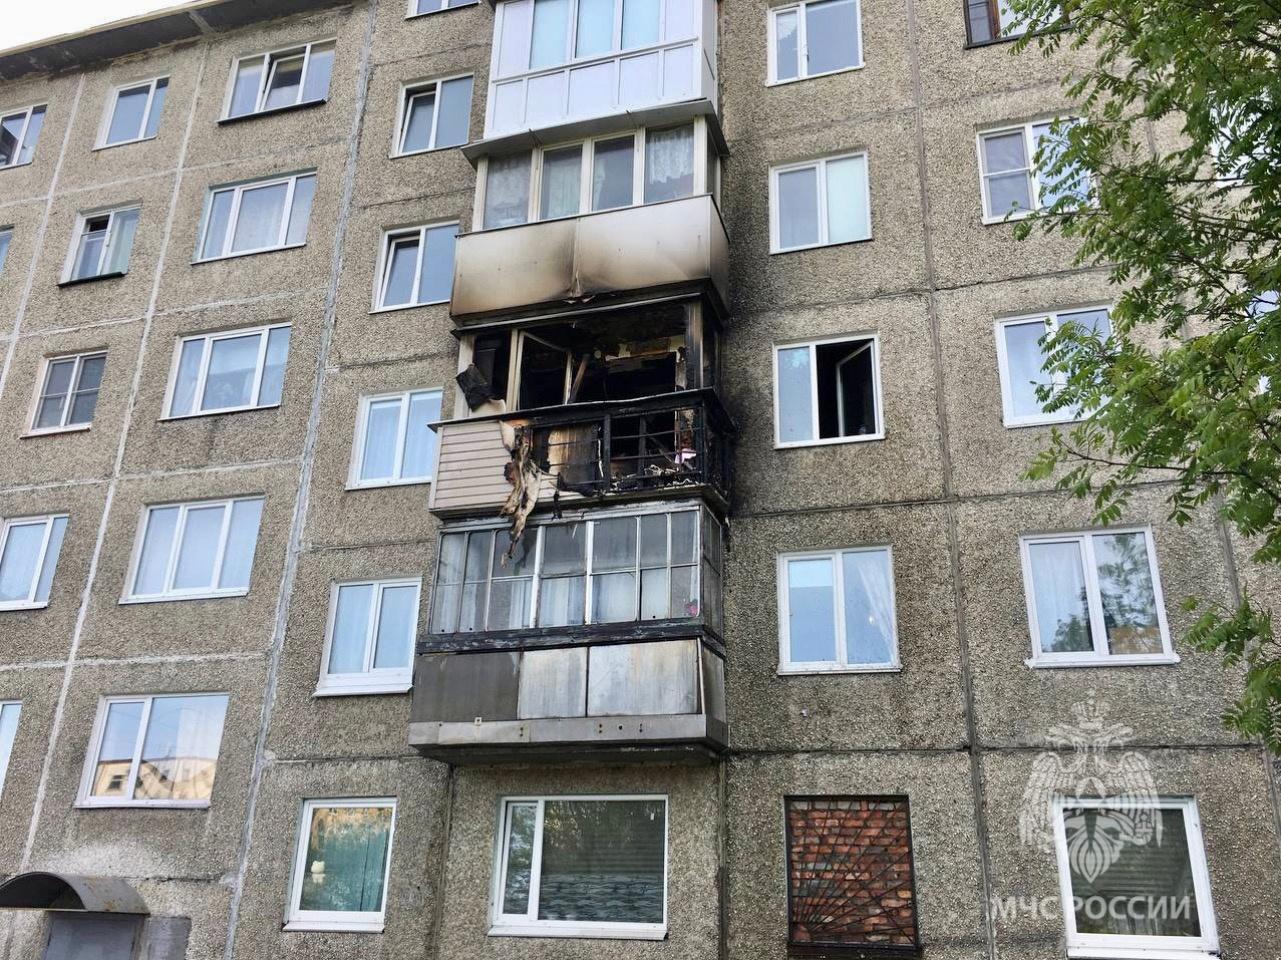 Пожар уничтожил балкон жилого дома в мурманской шестиэтажке